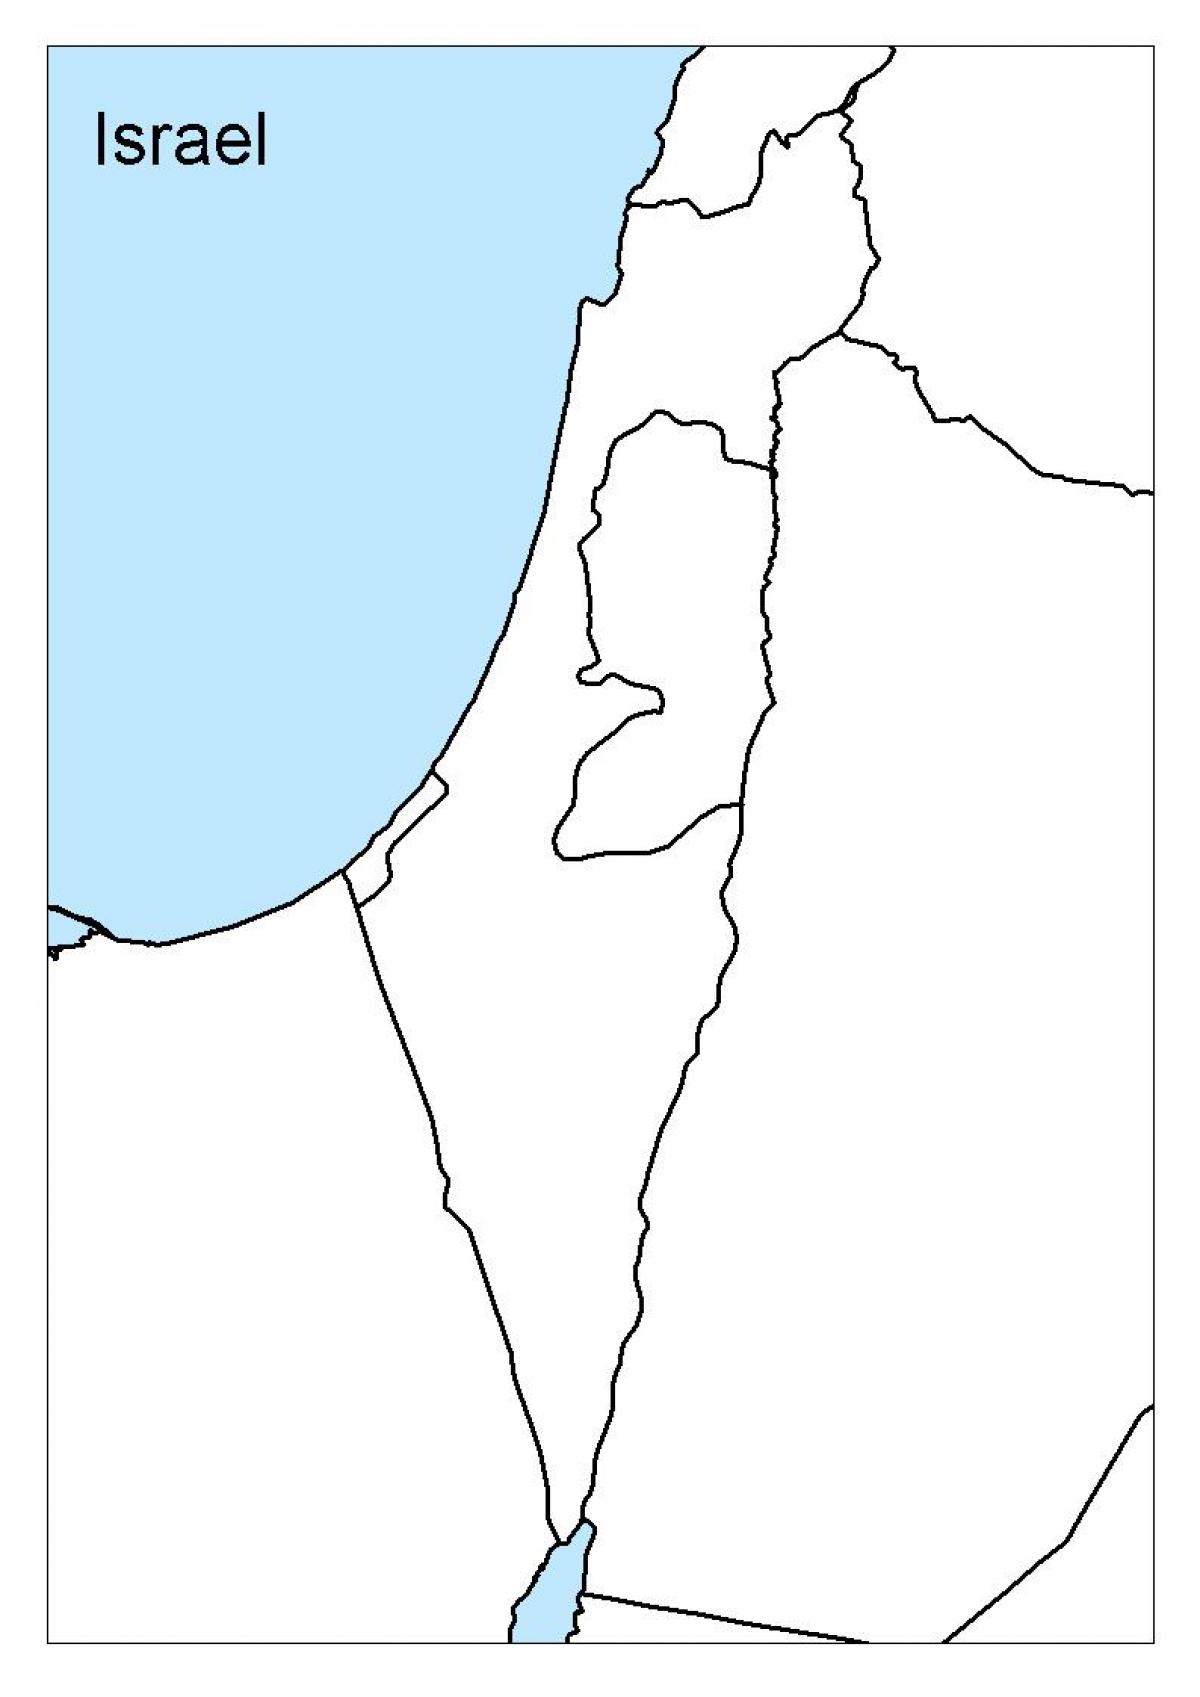 خريطة ملامح إسرائيل